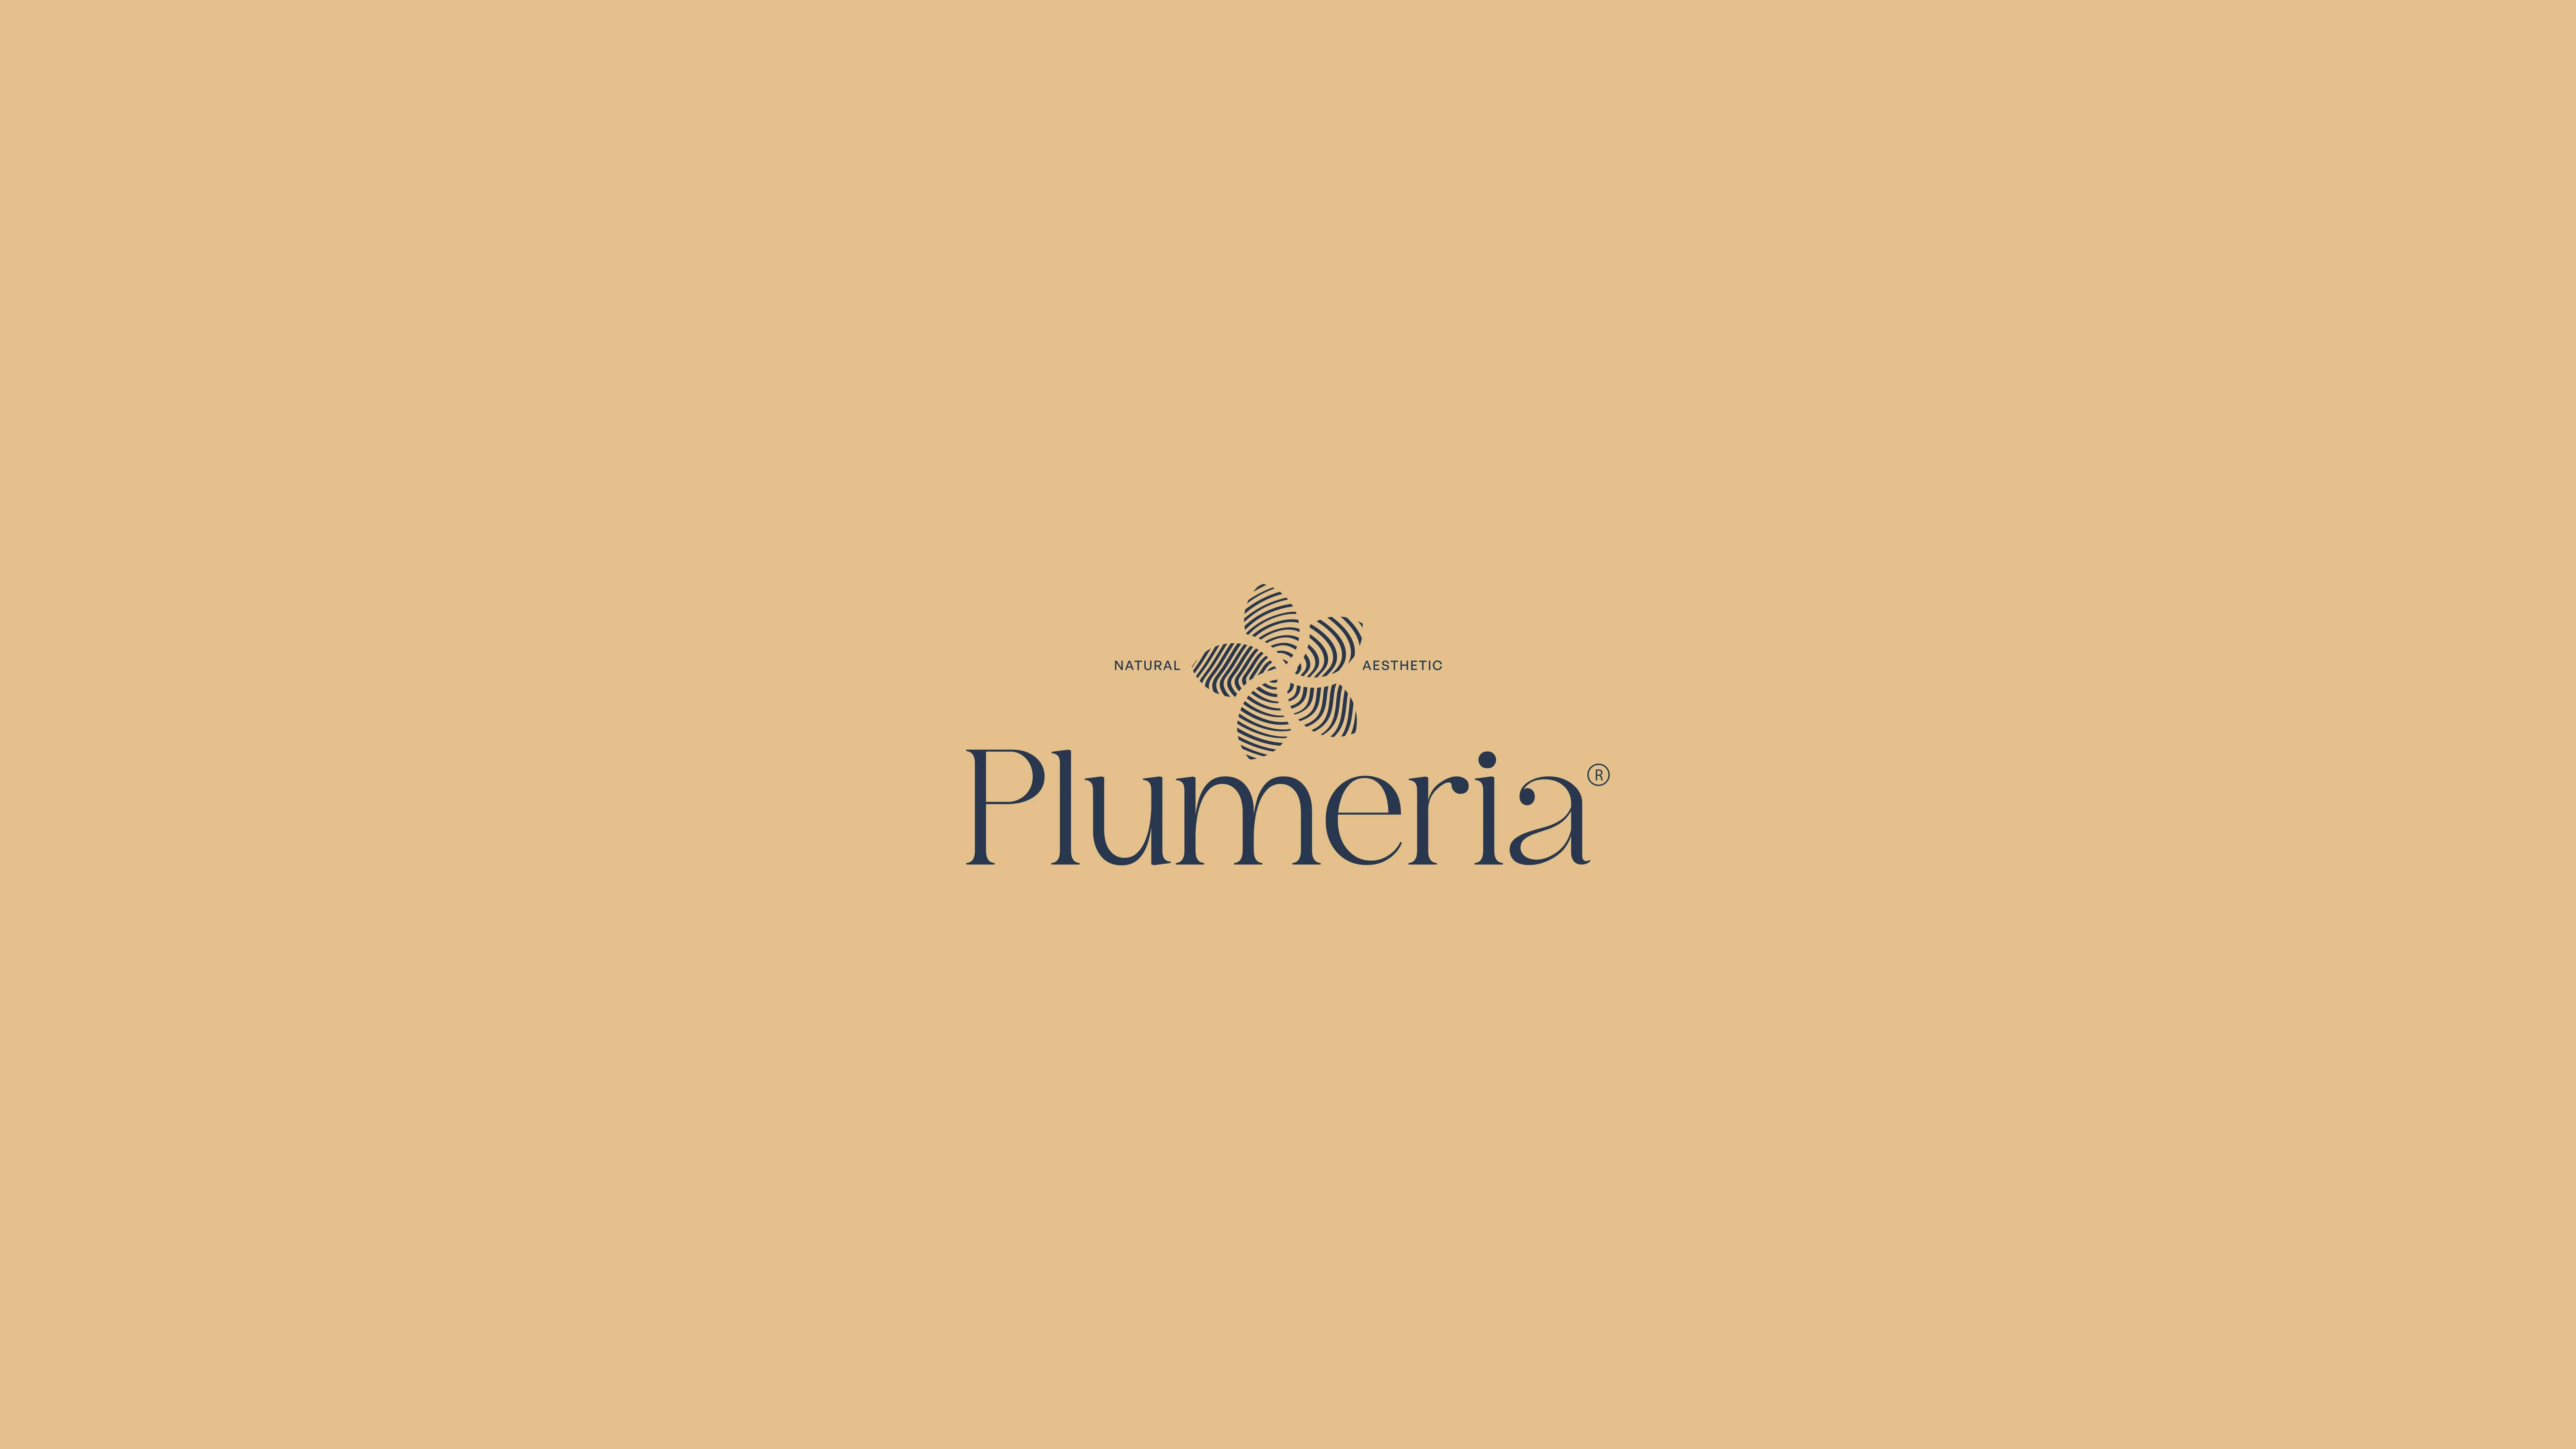 Plumeria Branding Design